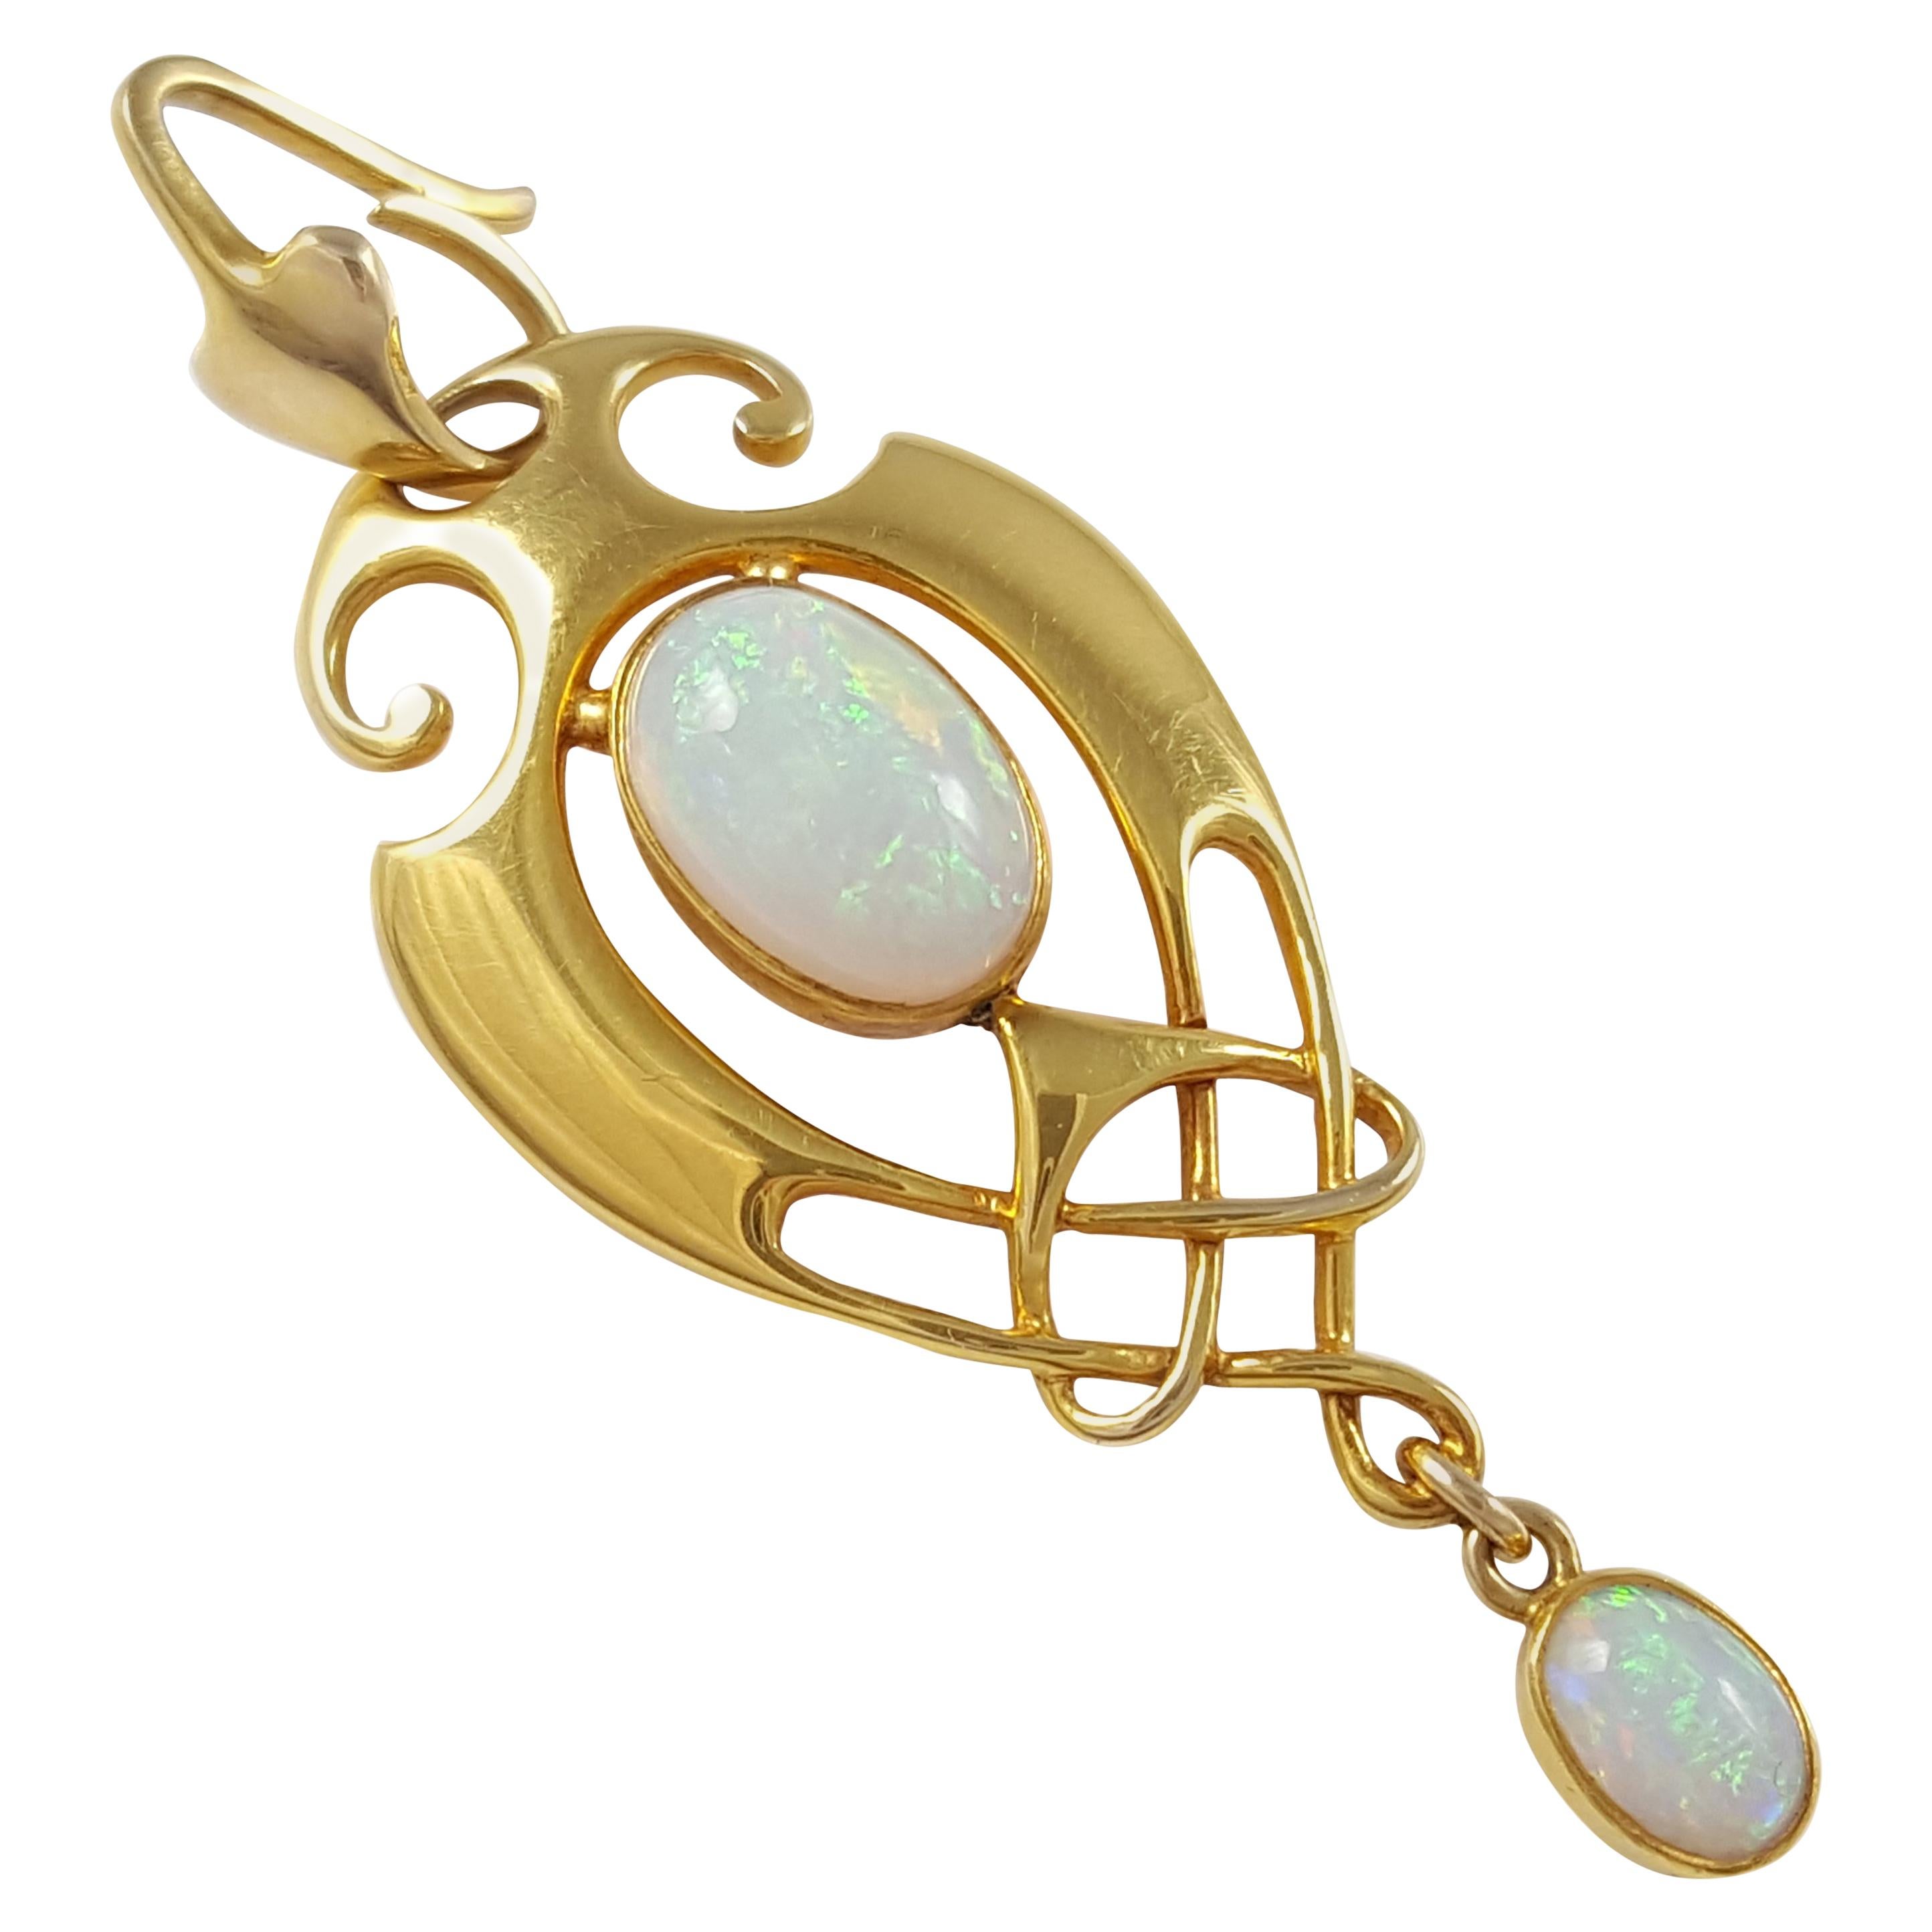 Murrle Bennett & Co. Art Nouveau Celtic Revival 15 Carat Gold and Opal Pendant